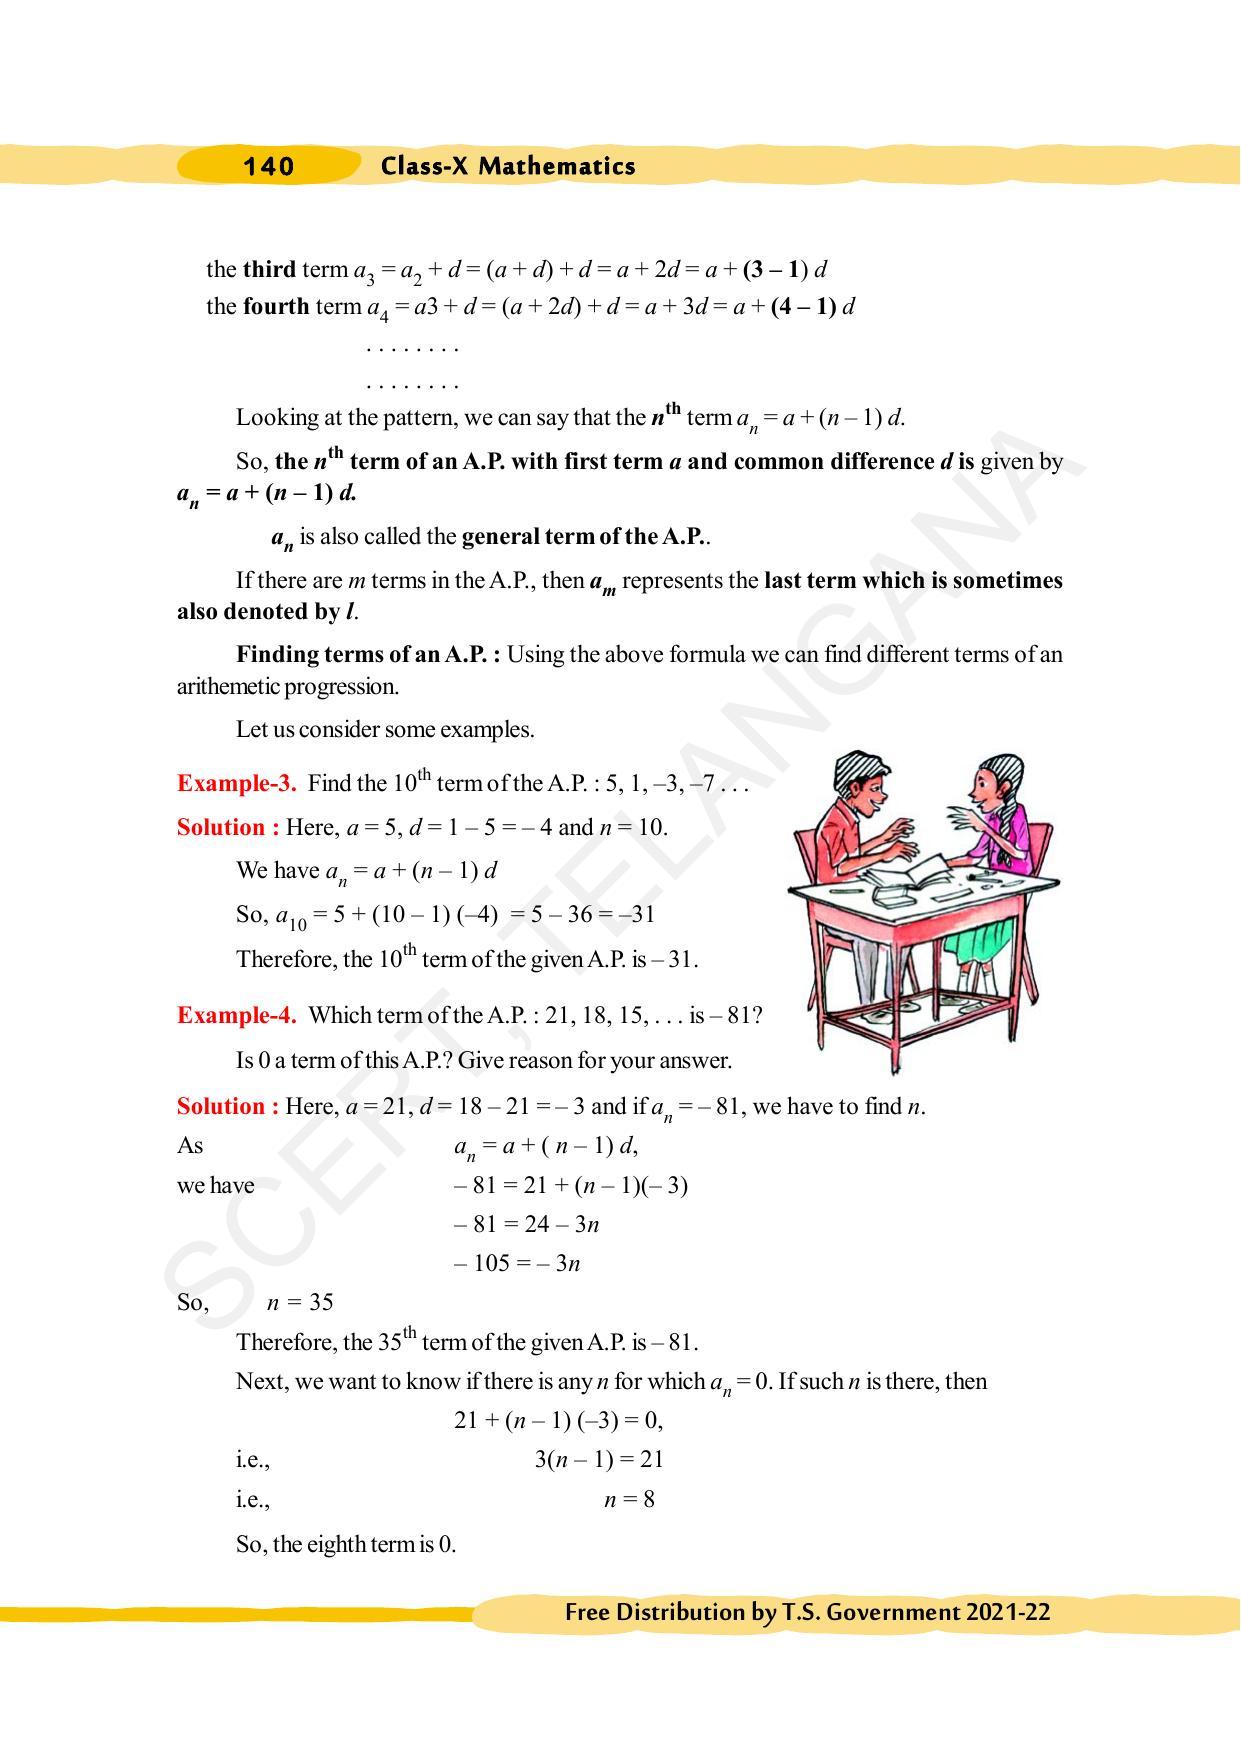 TS SCERT Class 10 Maths (English Medium) Text Book - Page 150